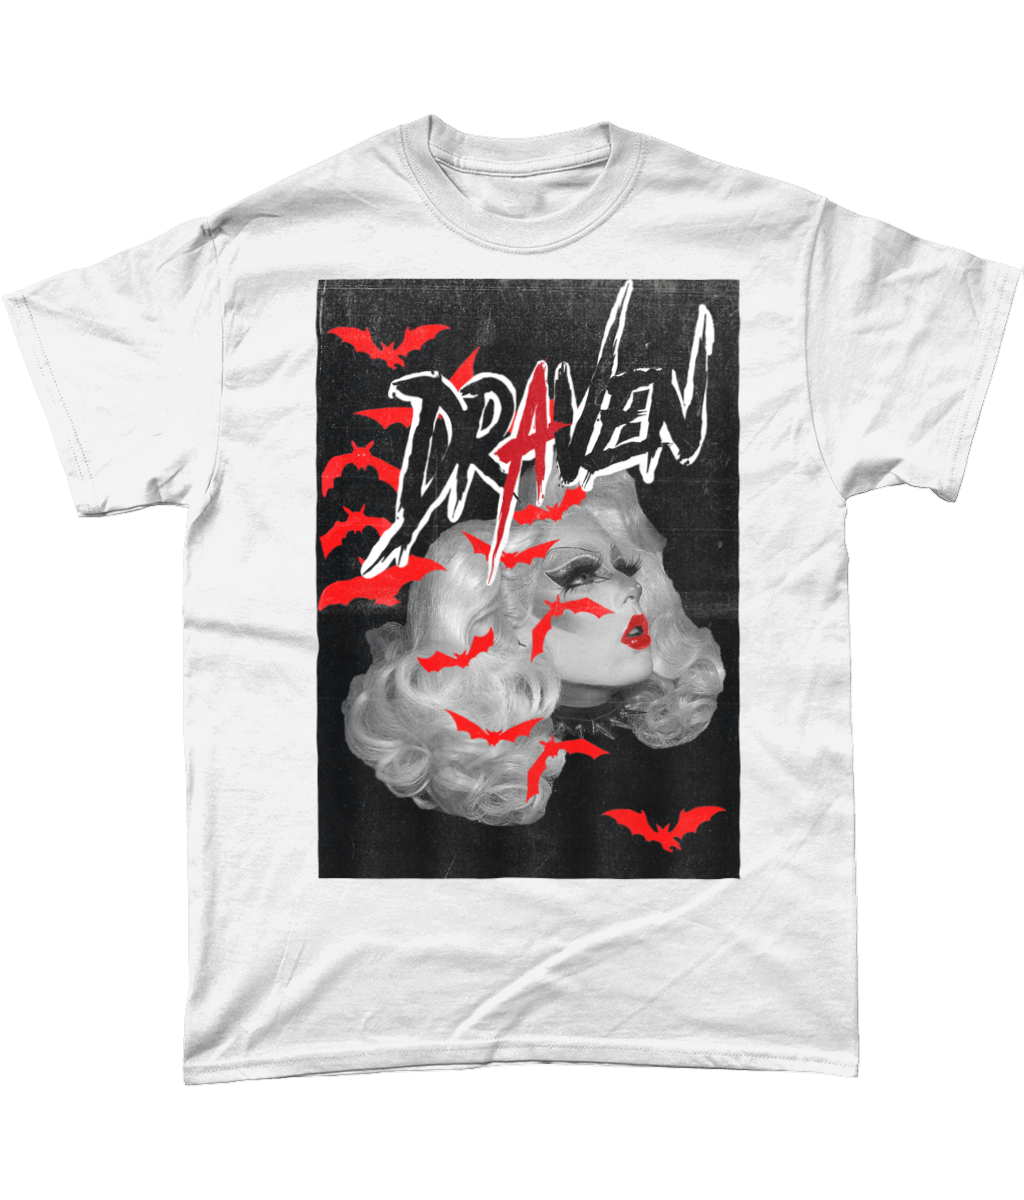 Draven - Static T-Shirt